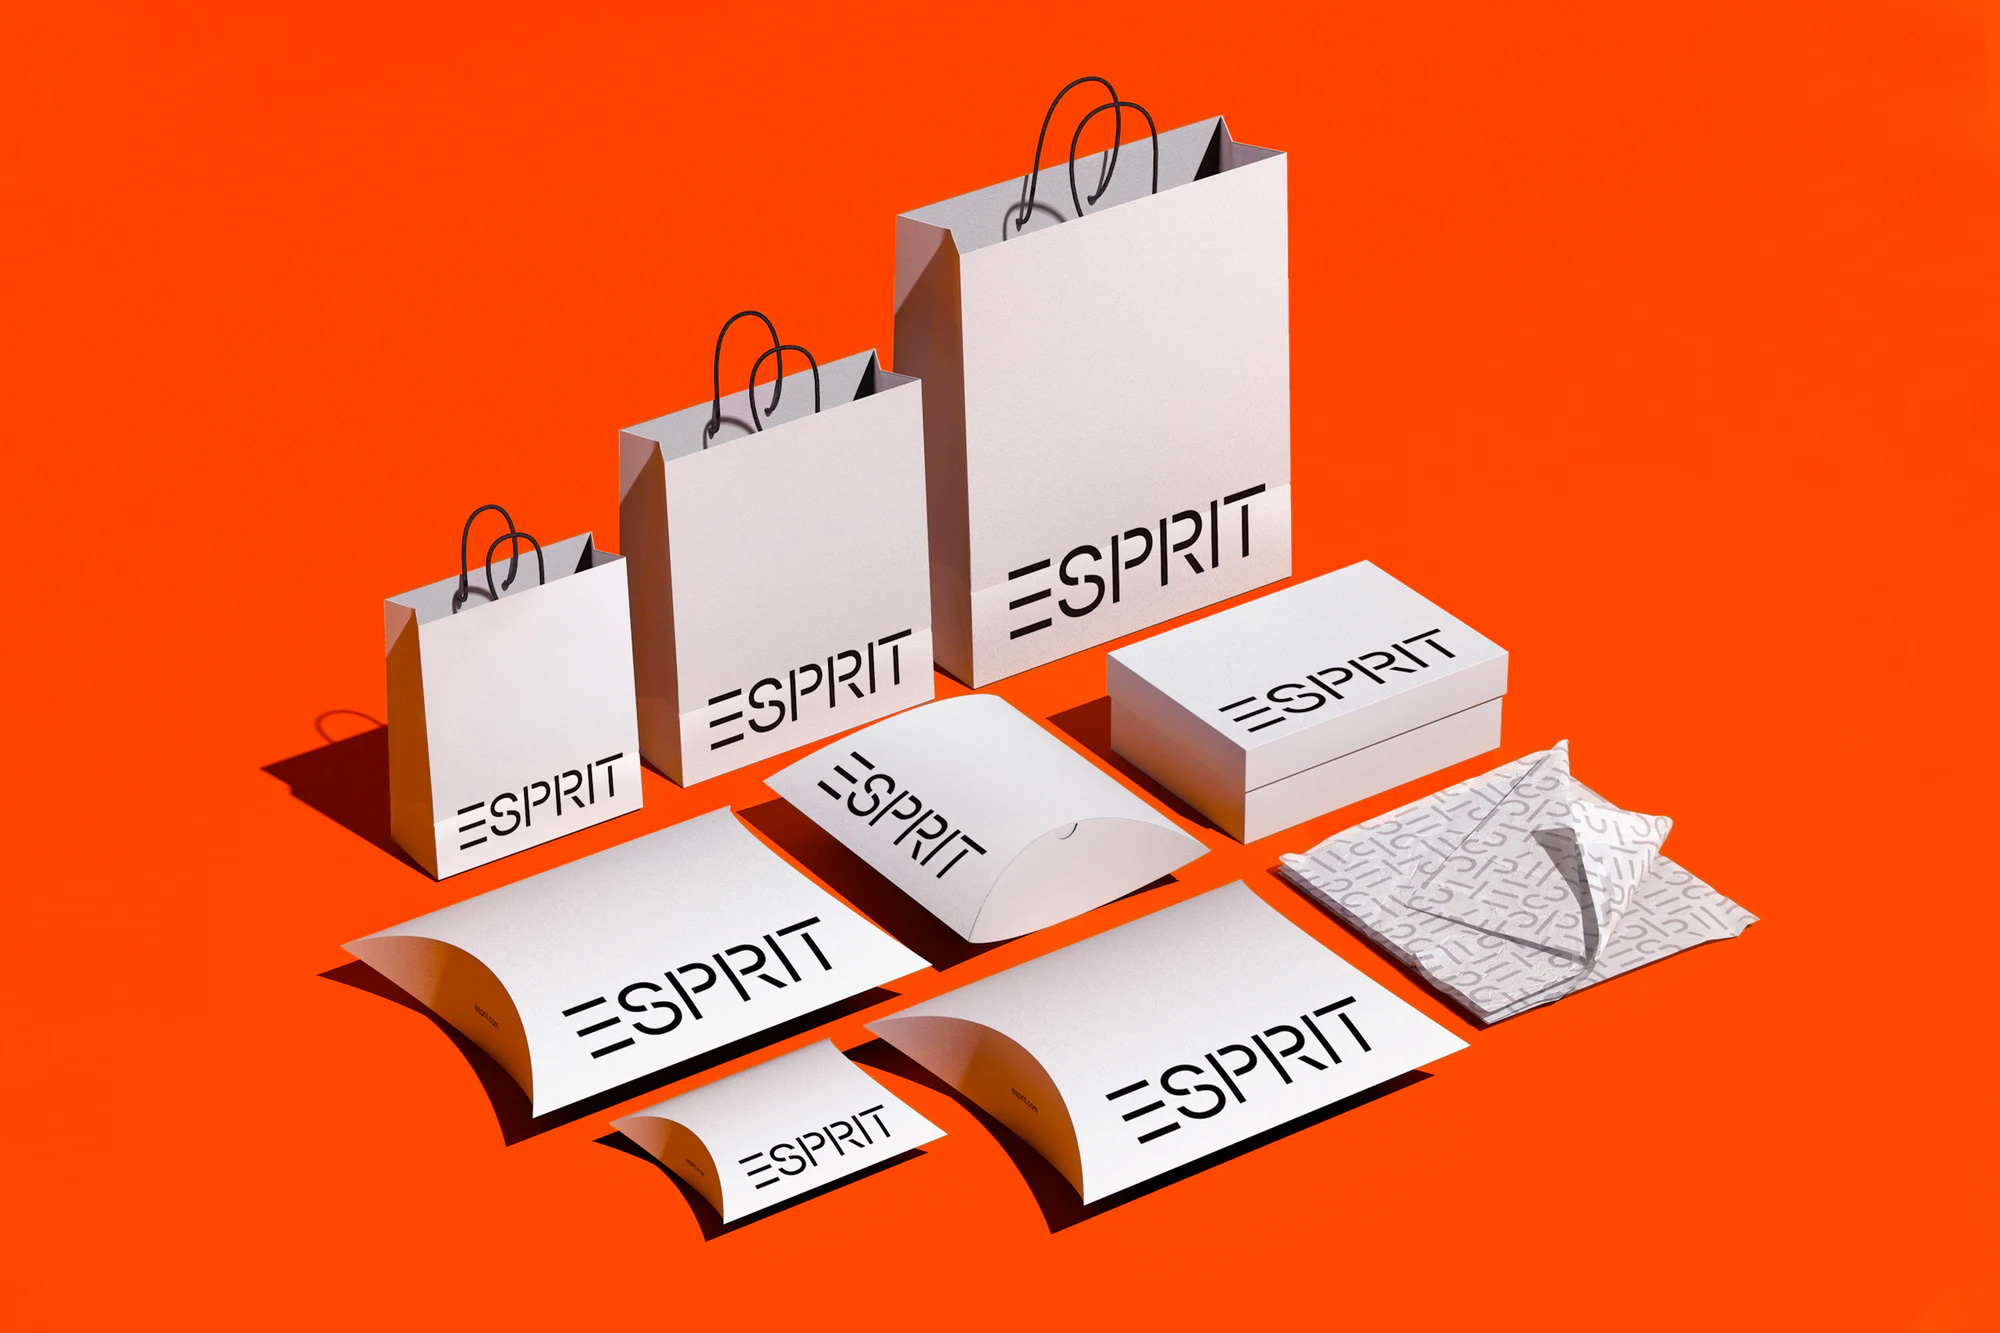  Новая идентификационная информация для Esprit по Пентаграмме [Pentagram] ] Сумки и коробки для покупок. </figcaption></figure>
<figure class=